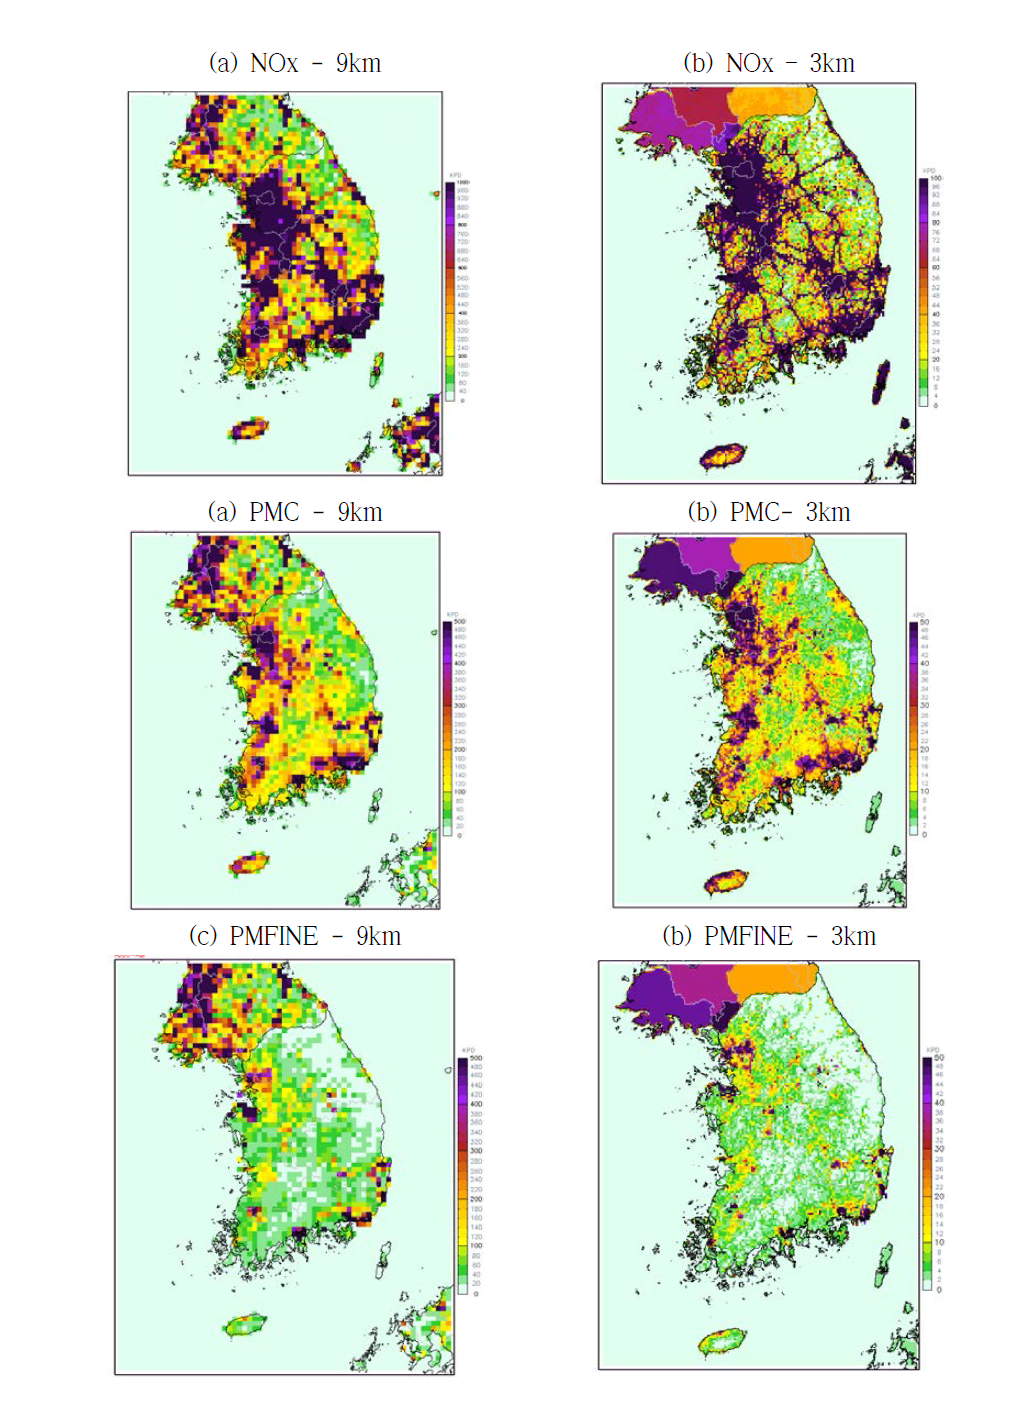 수평해상도에 따른 남한지역 배출량 공간분포 비교